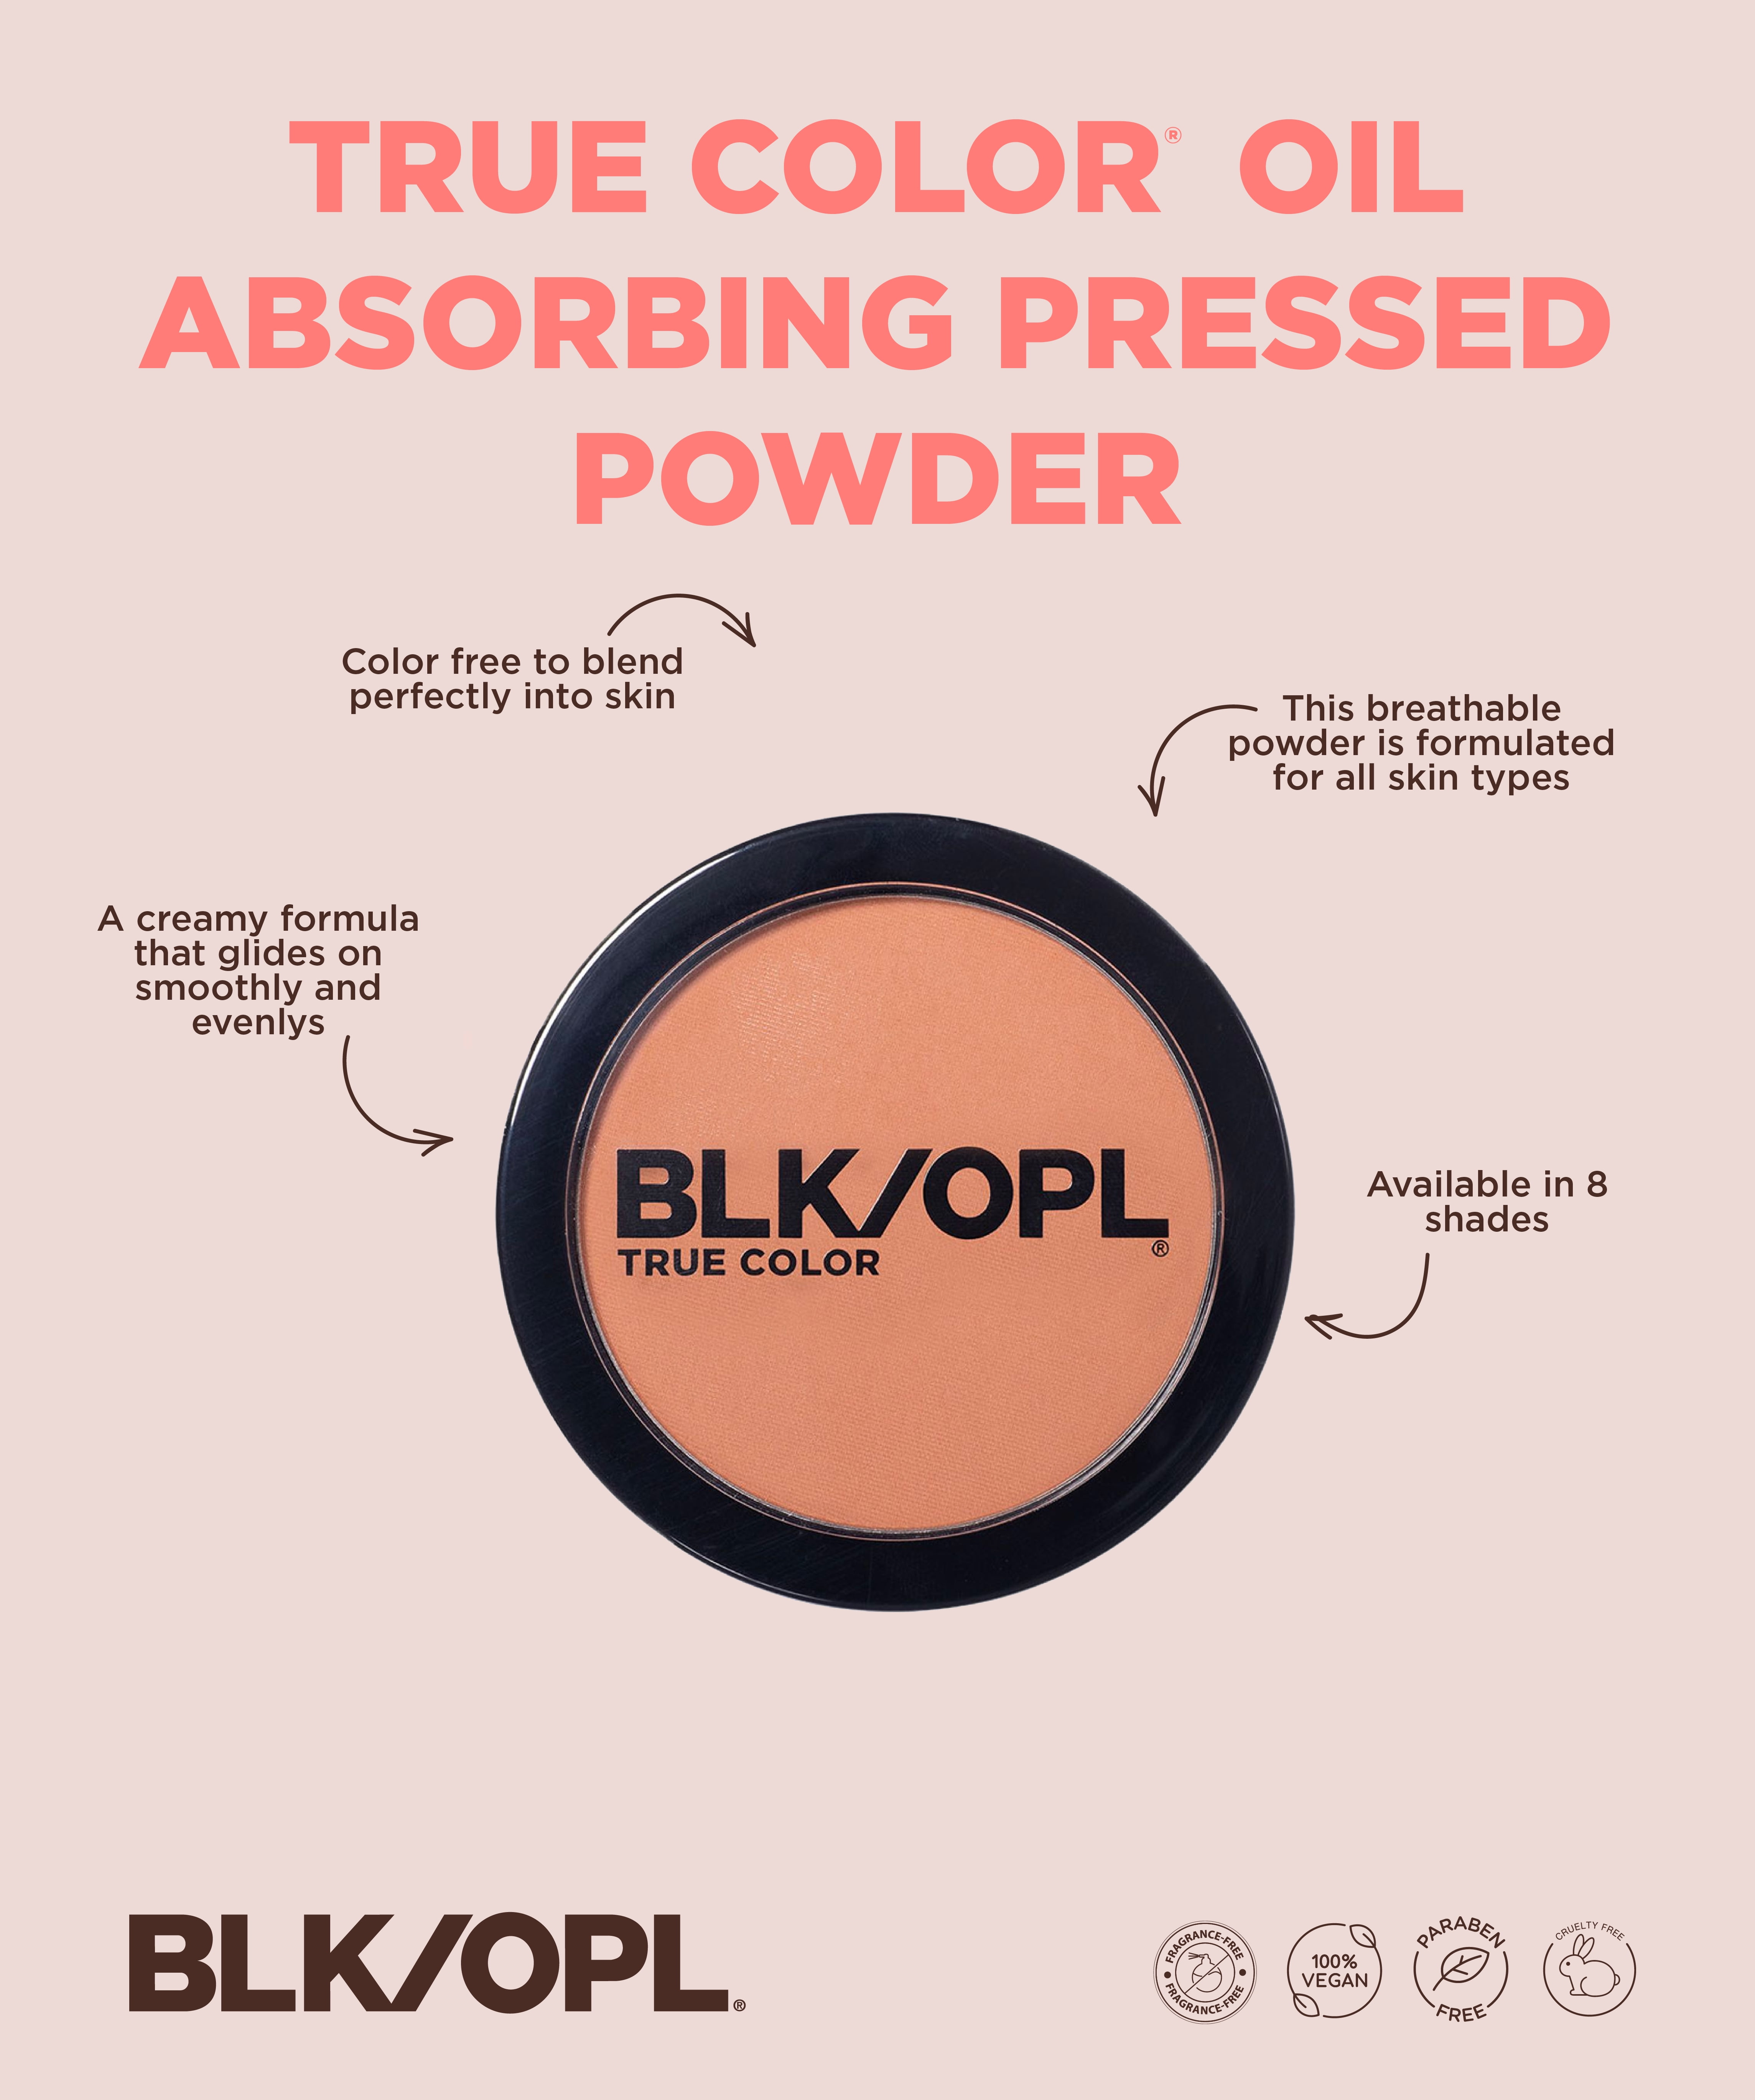 Blk/Opl True Color Pressed Powder, Oil Absorbing, Queen Sugar - 0.31 oz